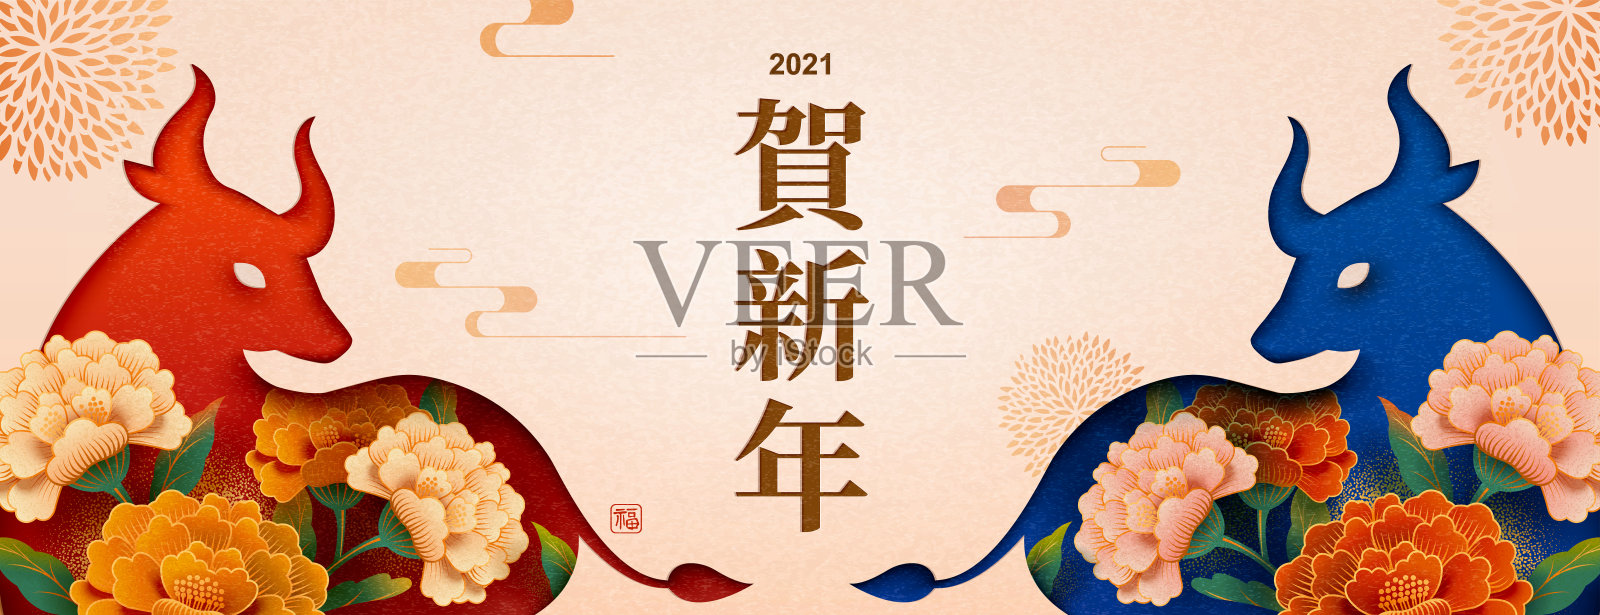 庆祝中国新年的横幅设计模板素材